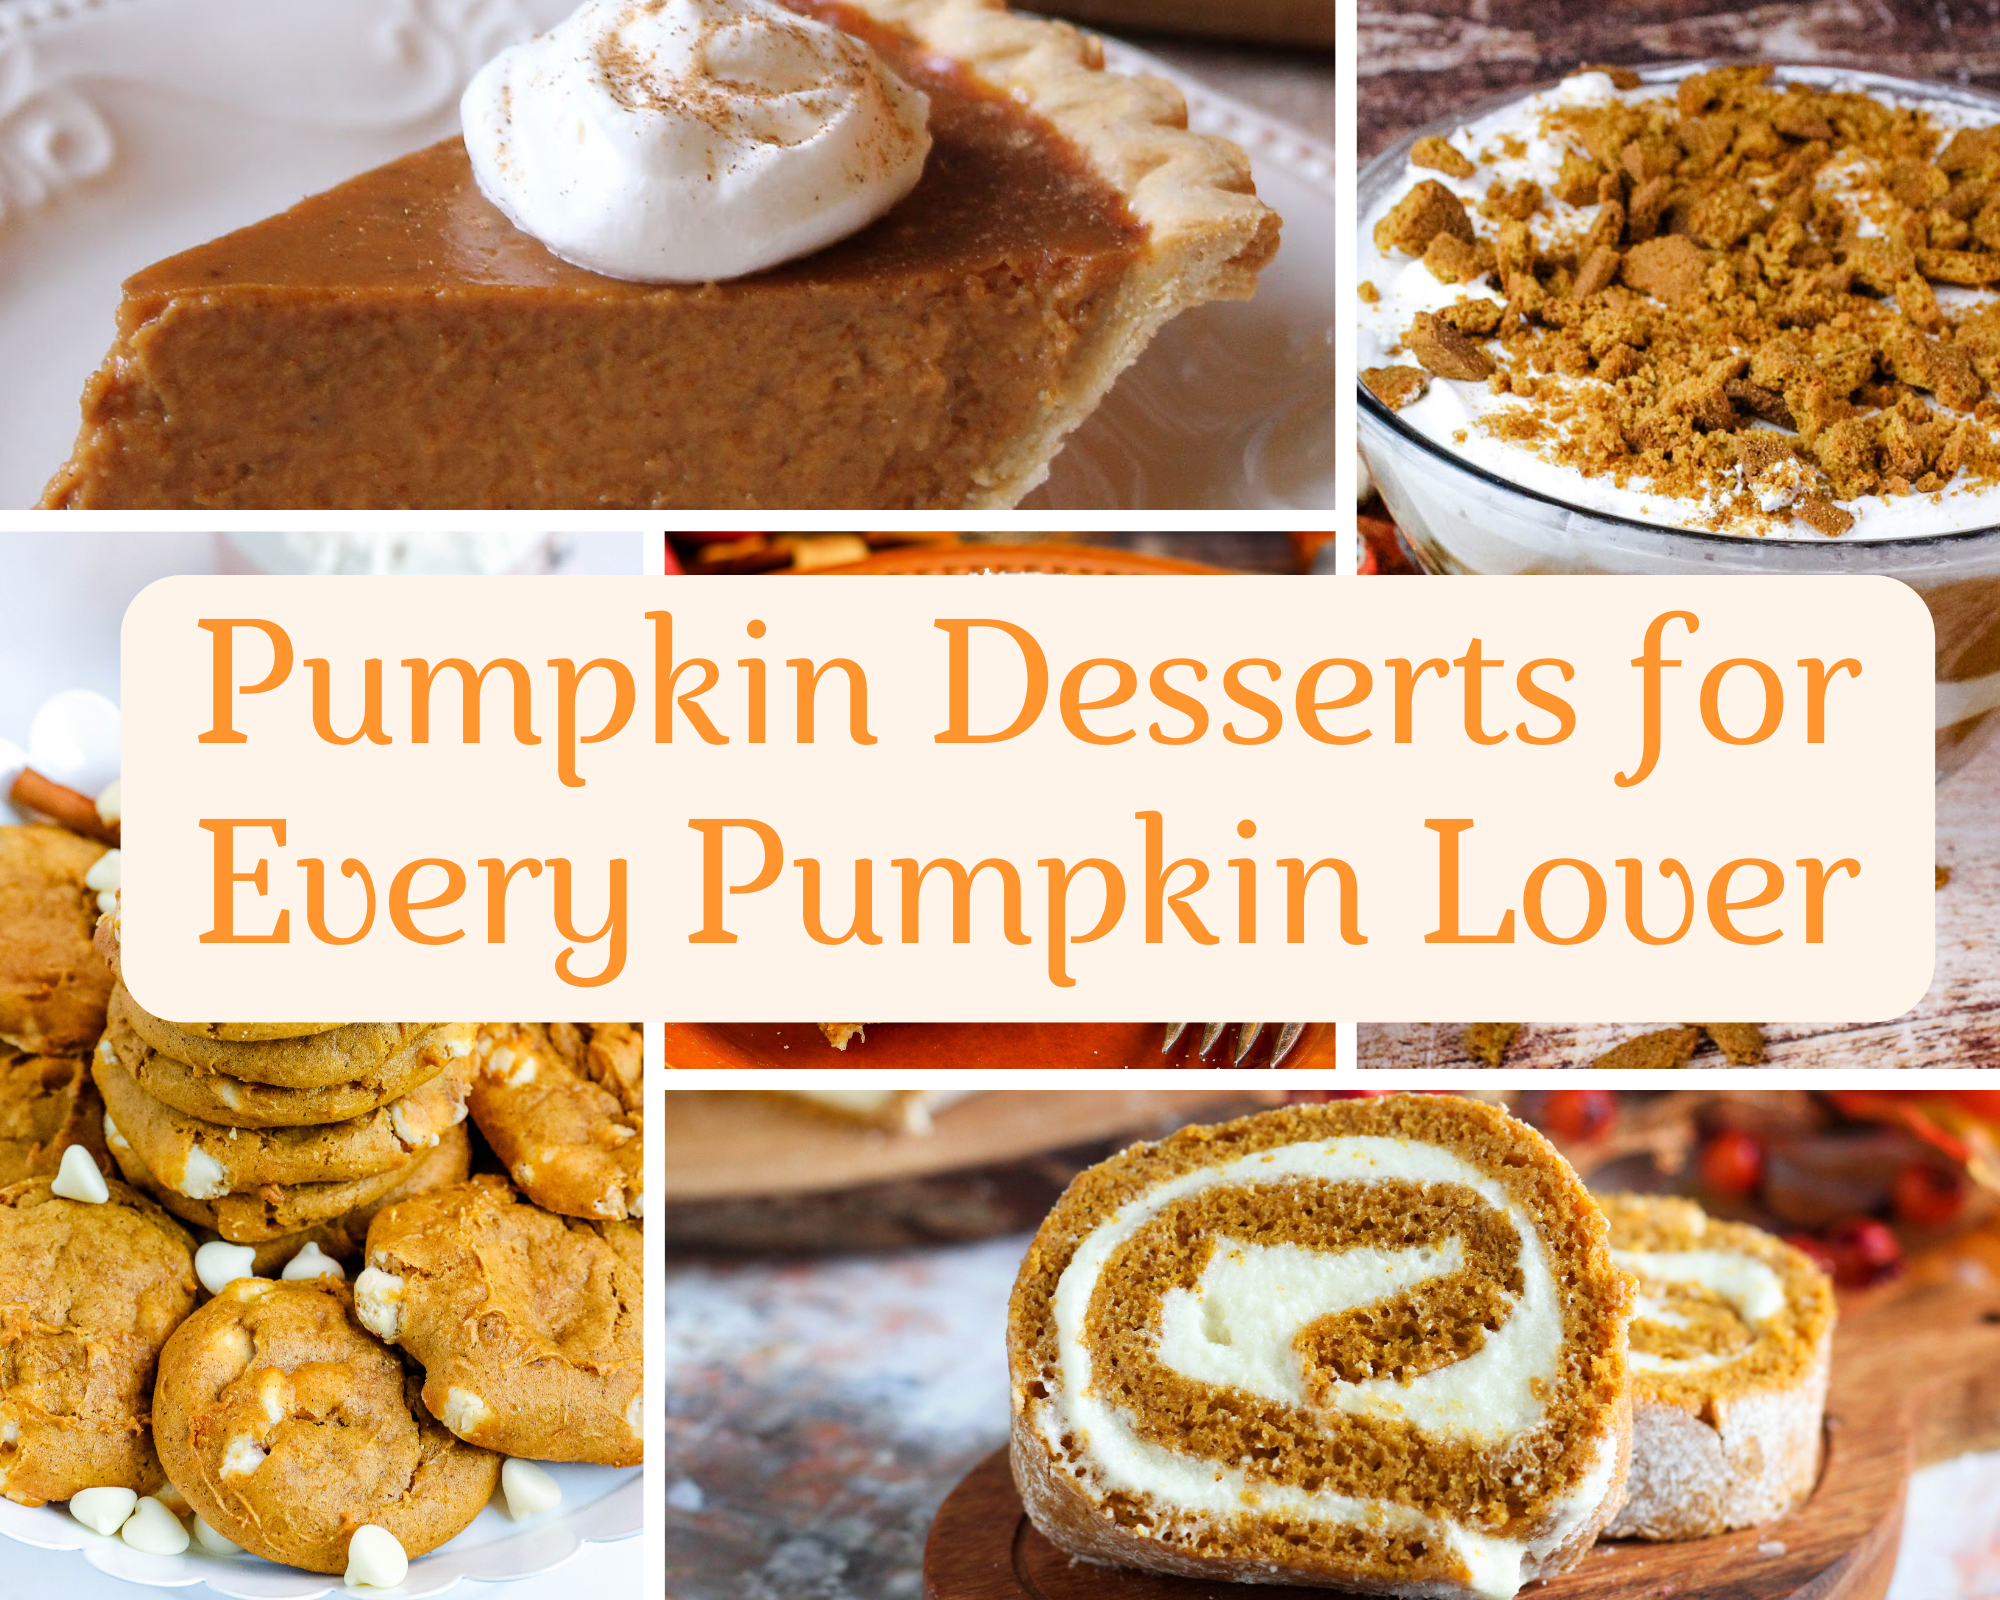 Pumpkin Desserts for Every Pumpkin Lover